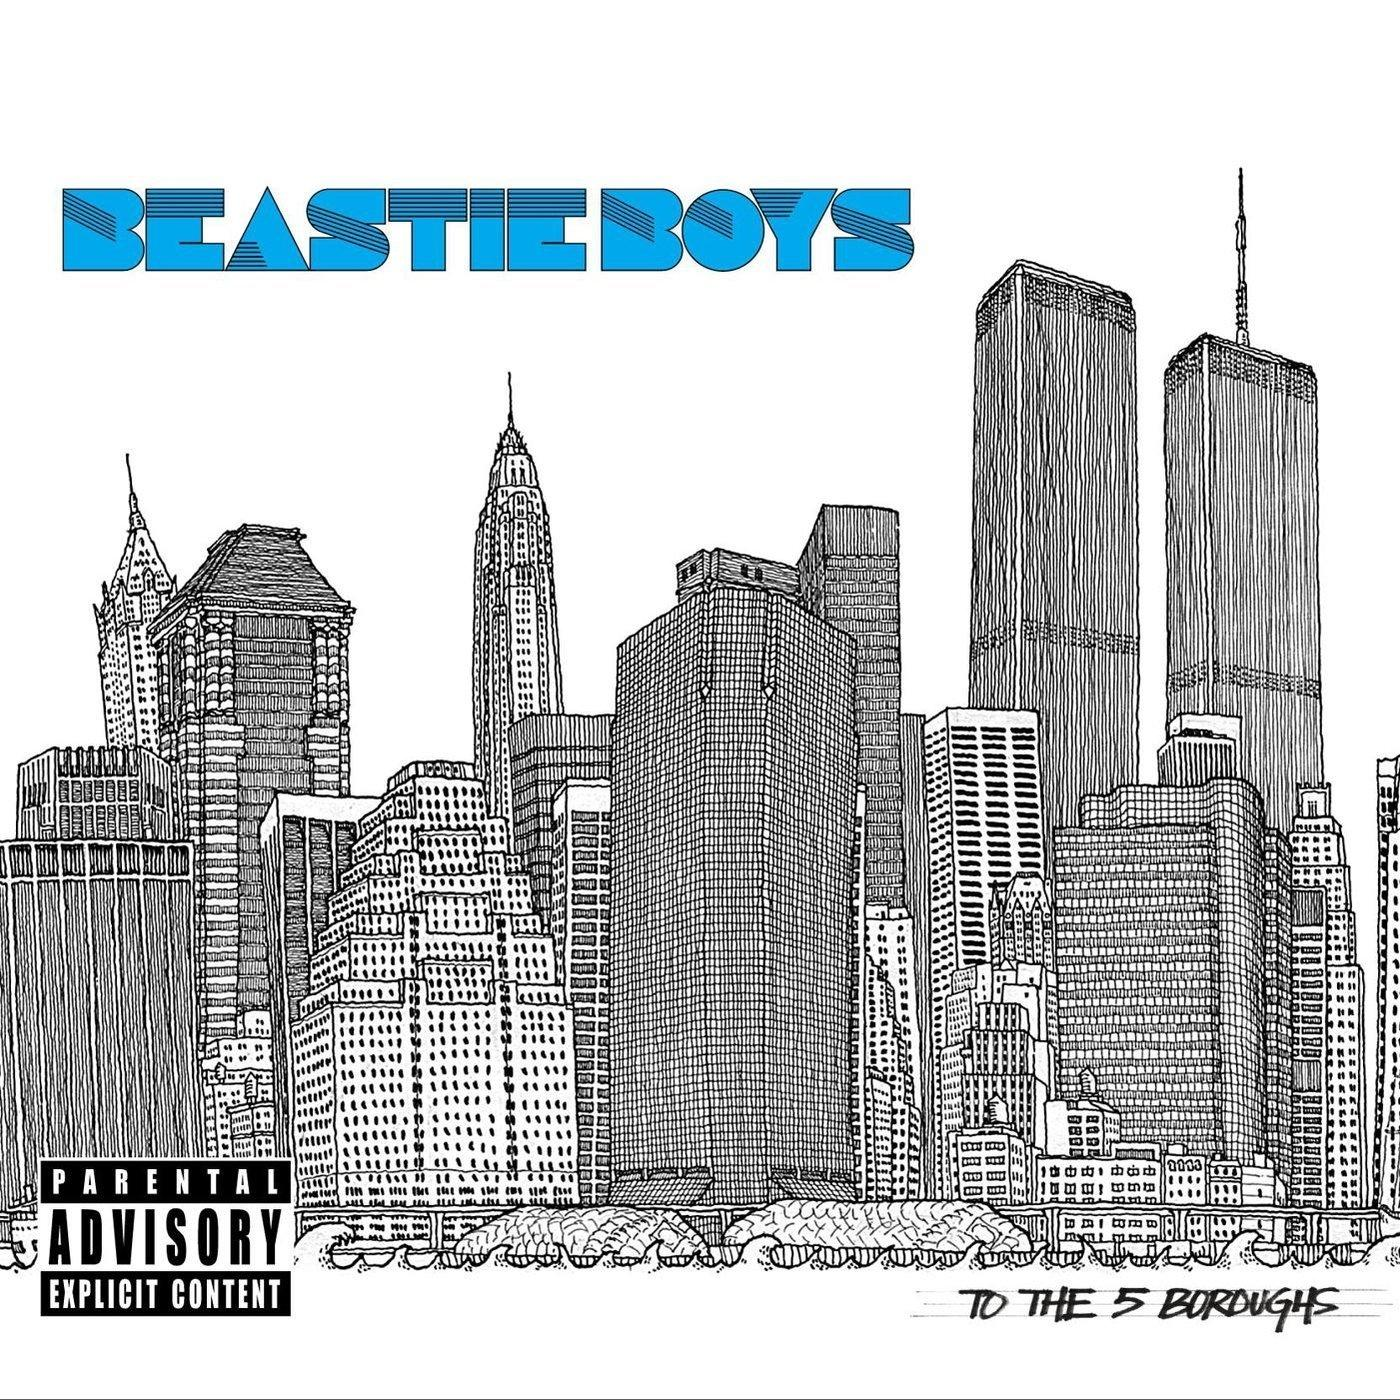 Beastie (Vinyl) 5 The Boroughs - To (2LP) - Boys